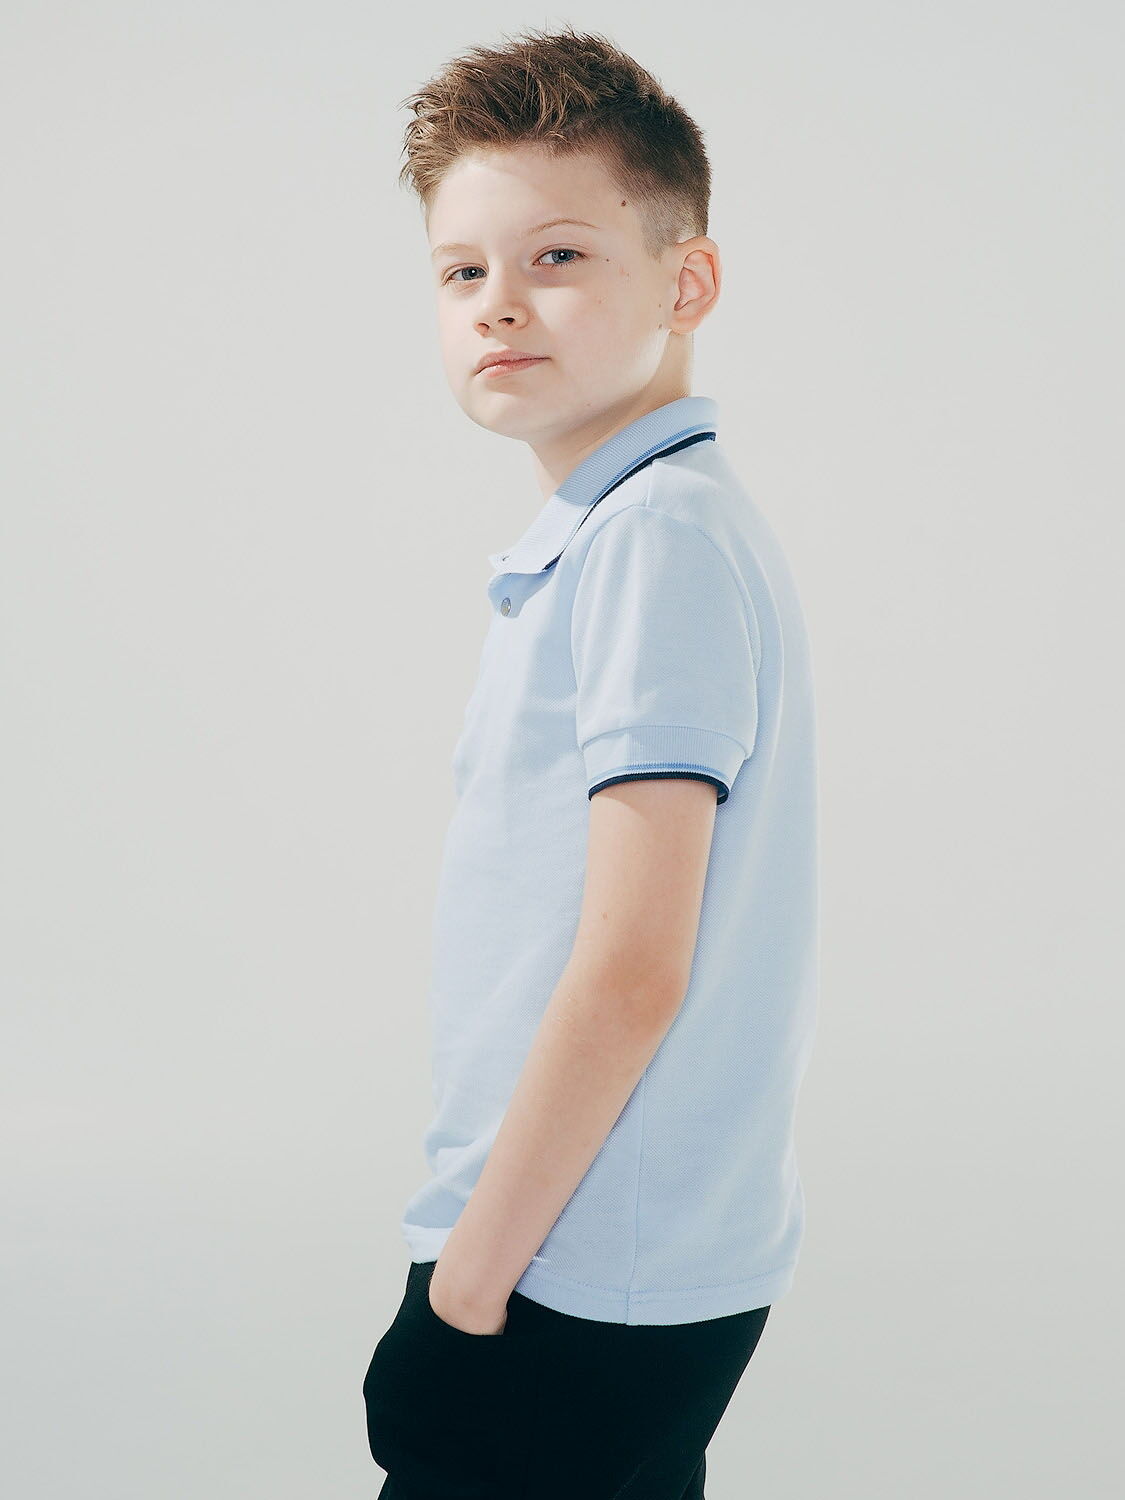 Футболка-поло с коротким рукавом для мальчика SMIL голубая 114594 - размеры